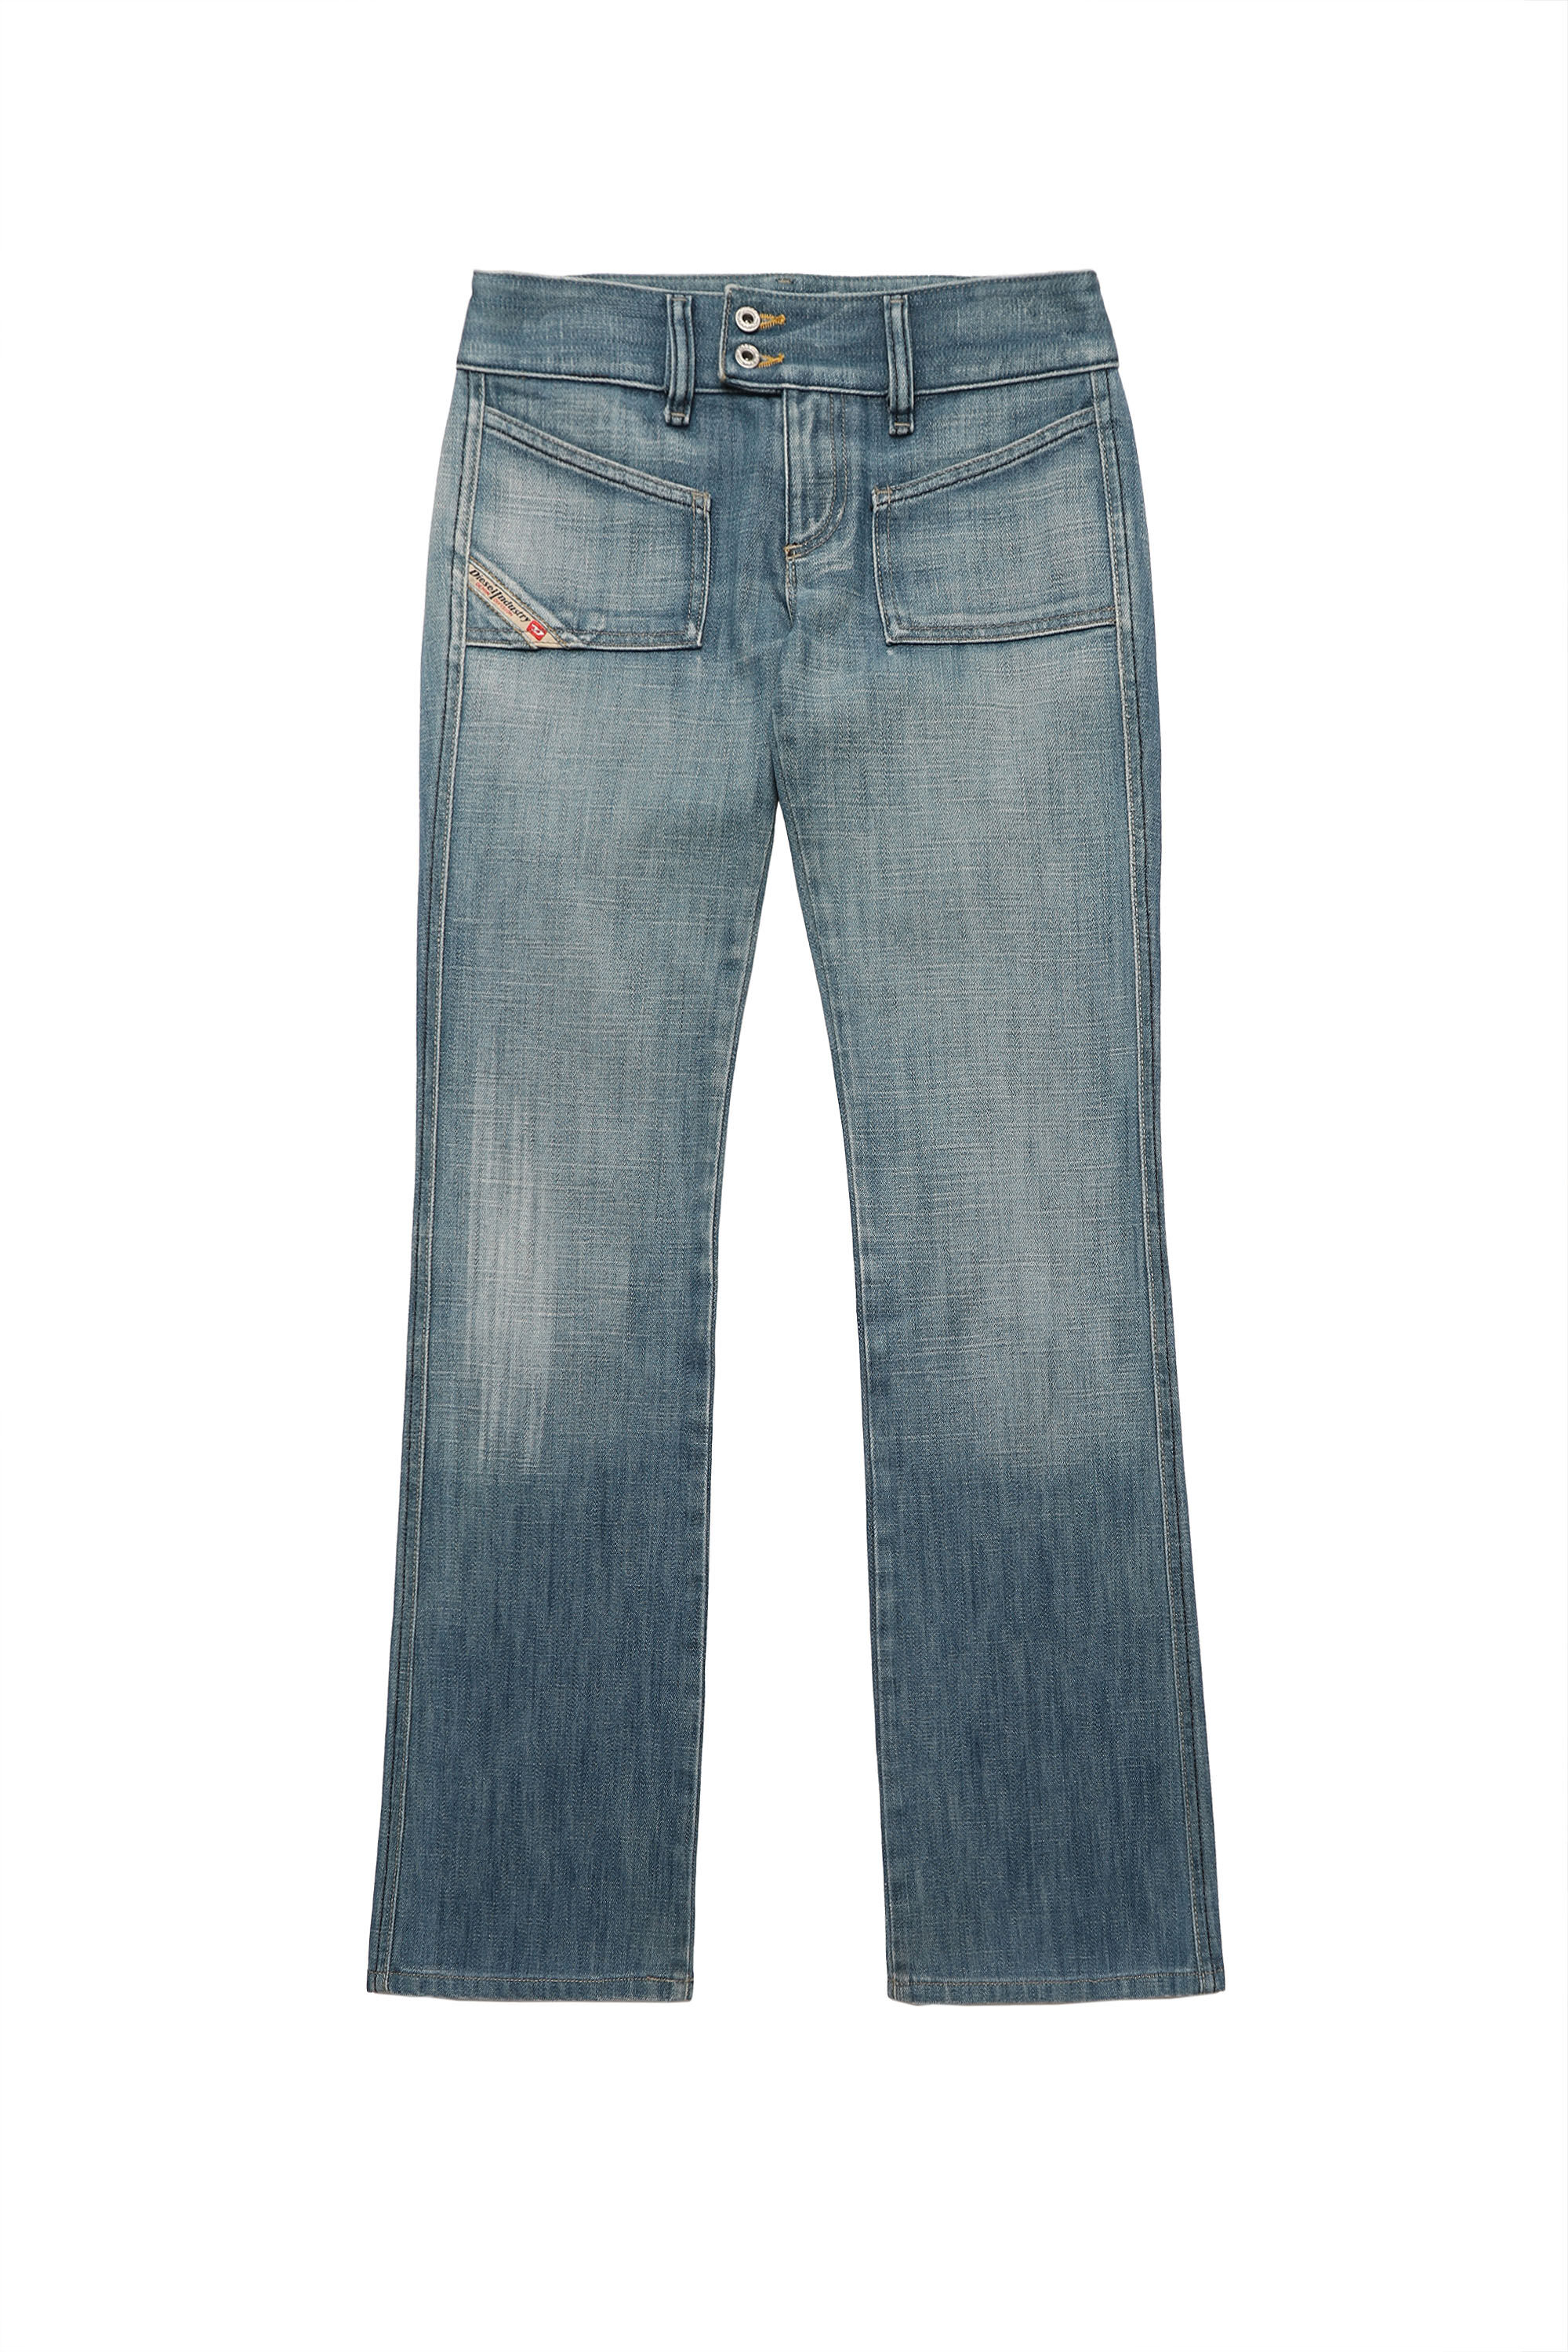 Fascinerend Classificeren Perforatie HUSH DS Woman - Jeans | Diesel Second Hand